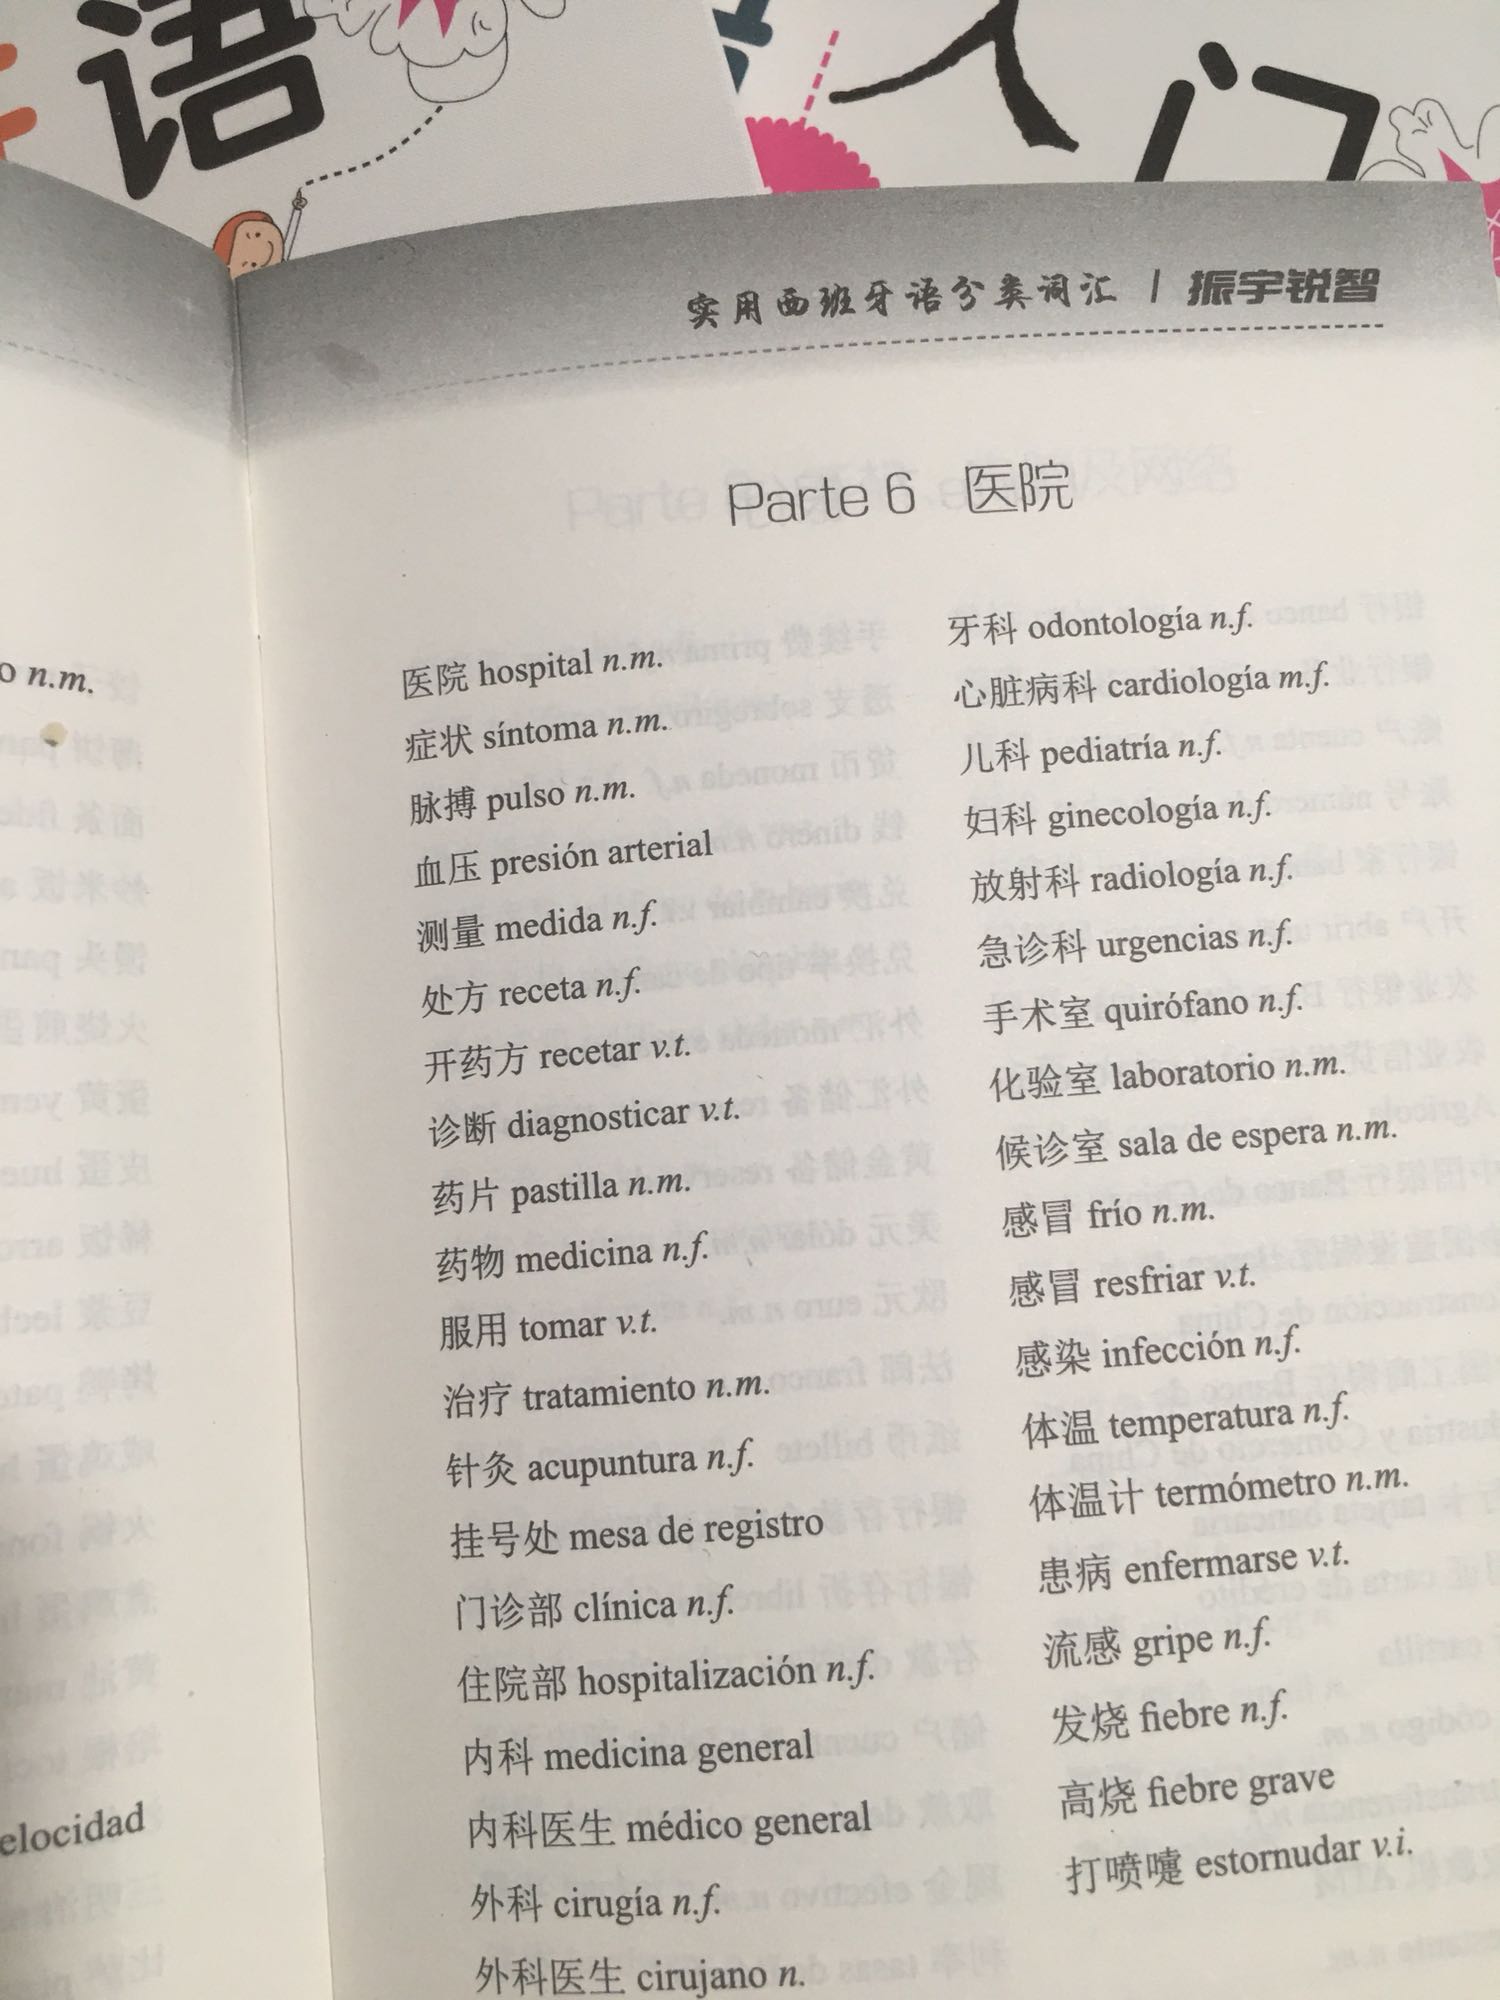 西班牙语看上去还是很难，这个主要是跟这个中文差别太大，需要用心学习，那我给你们多照几张照片，你们看一下，了解一下，书比较大